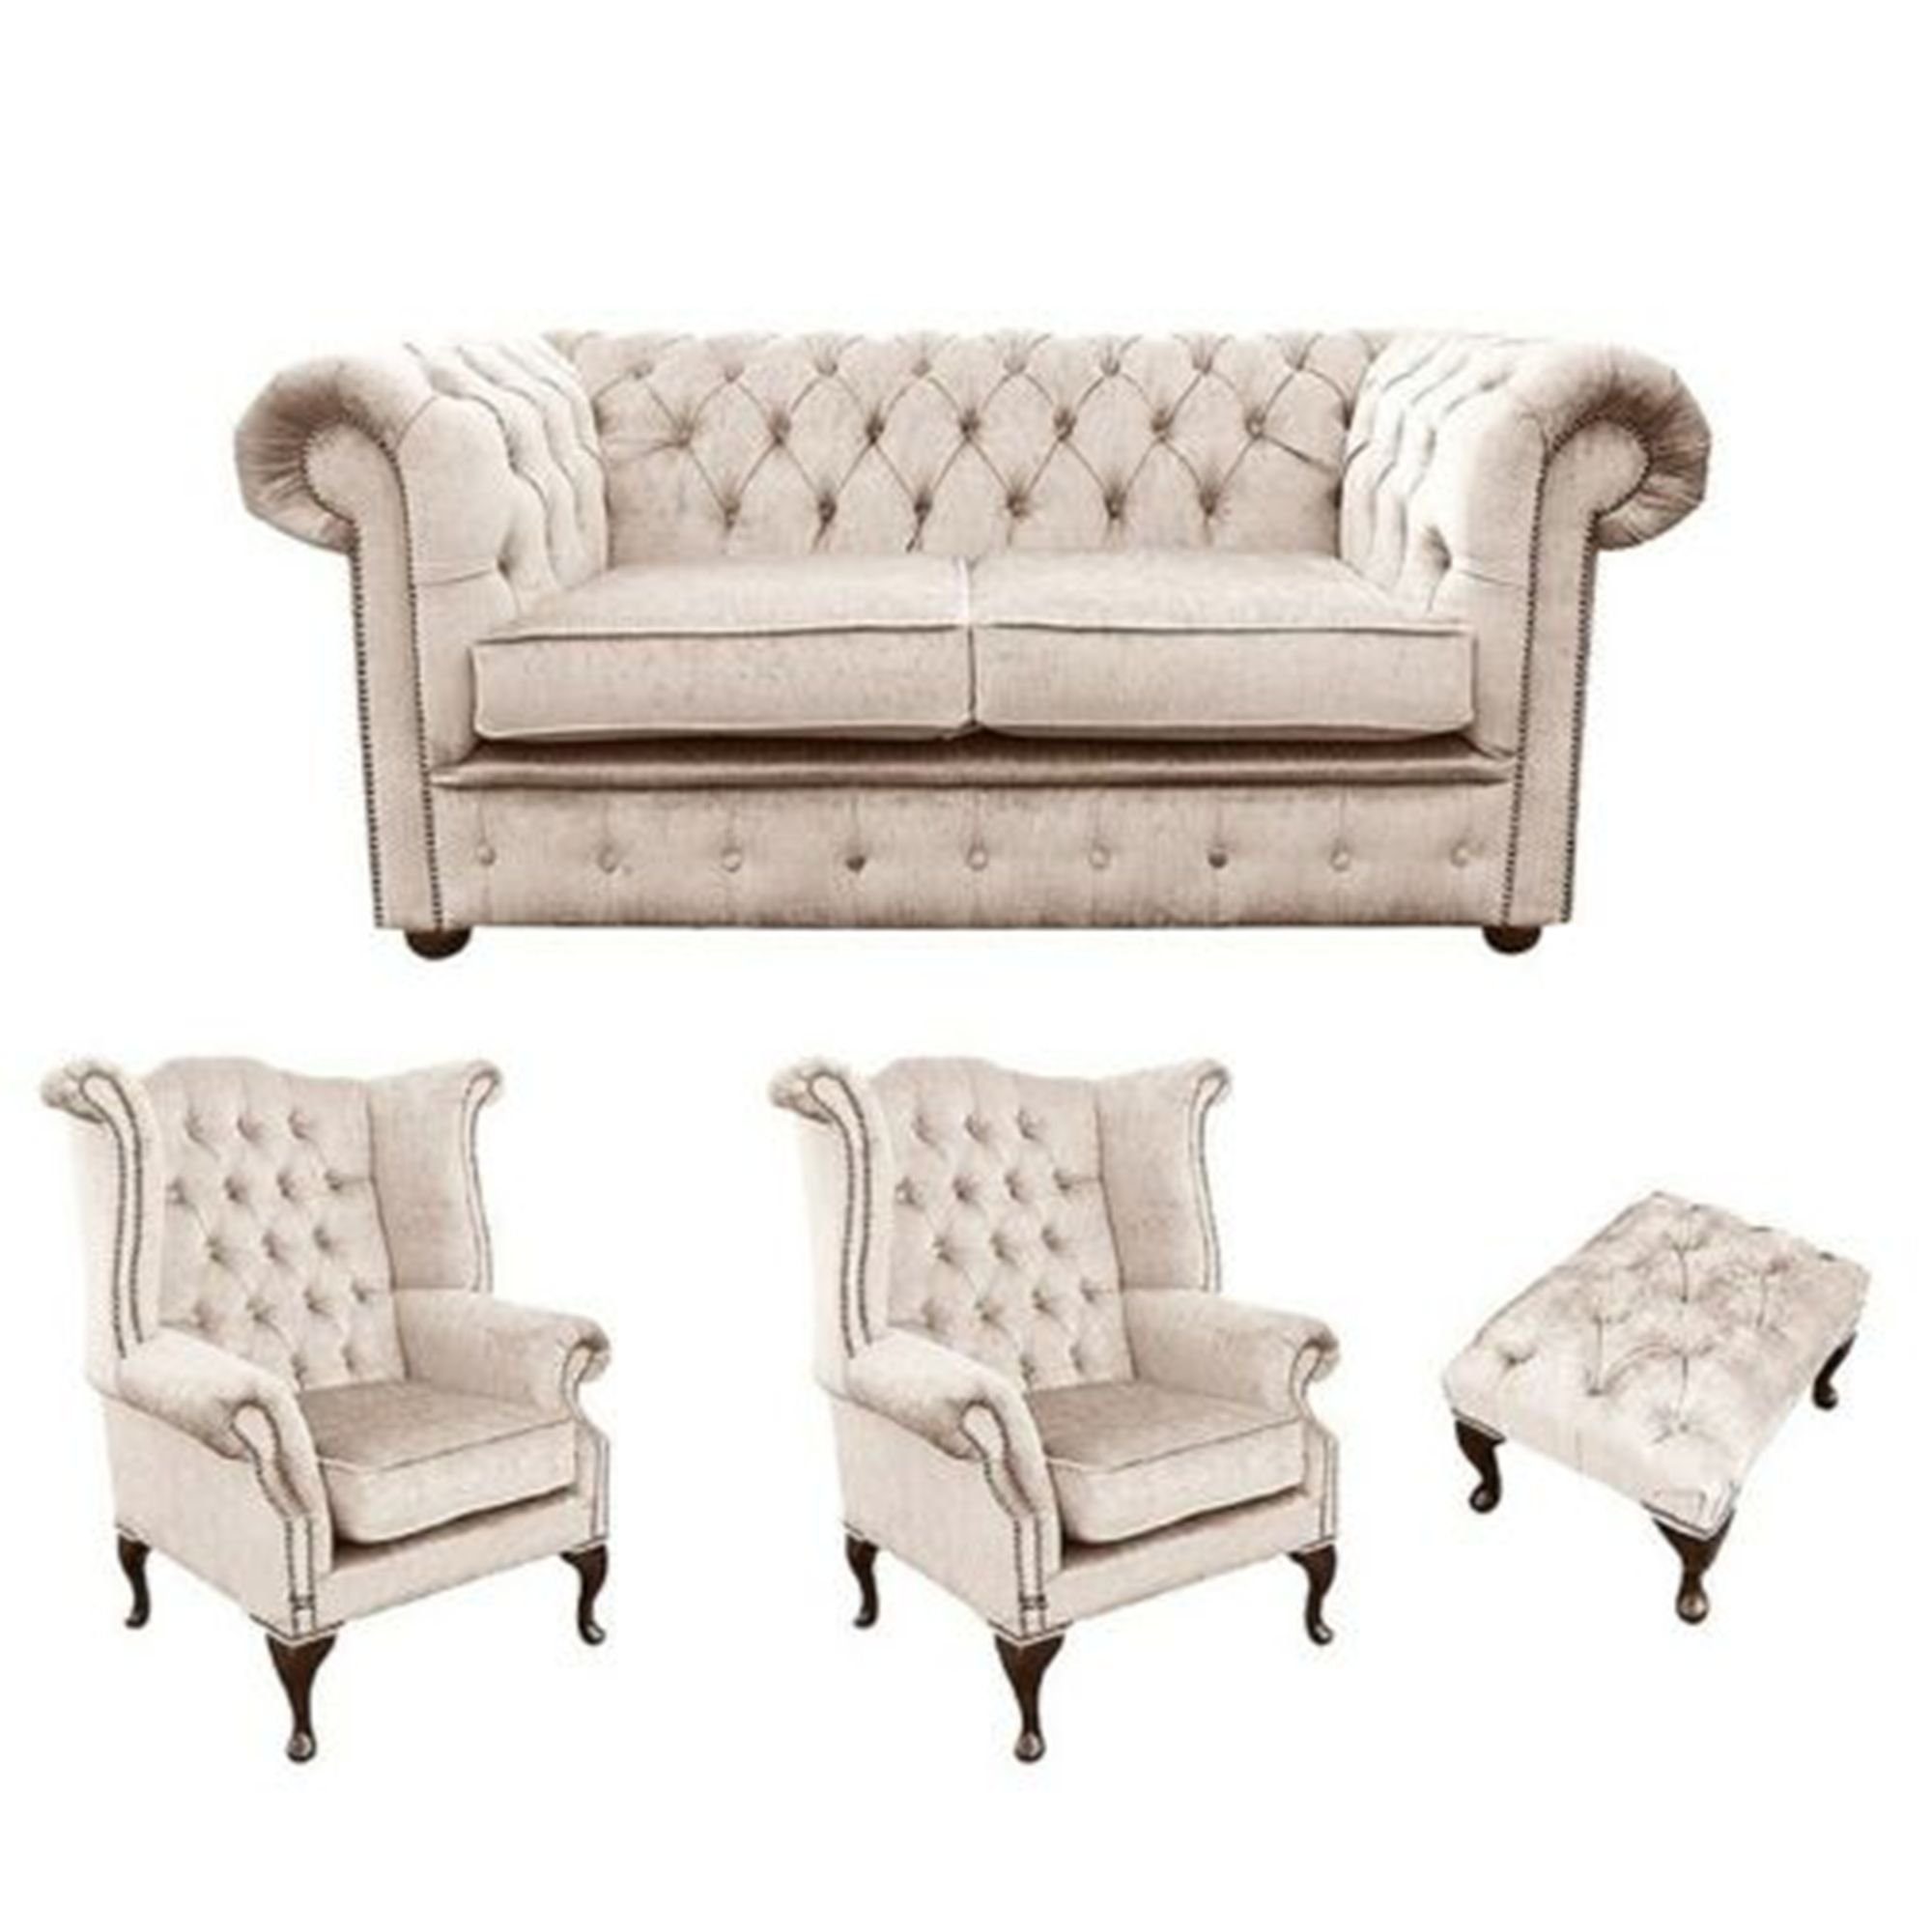 JVmoebel Sofa Beige Chesterfield Design Garnitur in Luxus Sitz Europe Polster Couch Made Garnitur